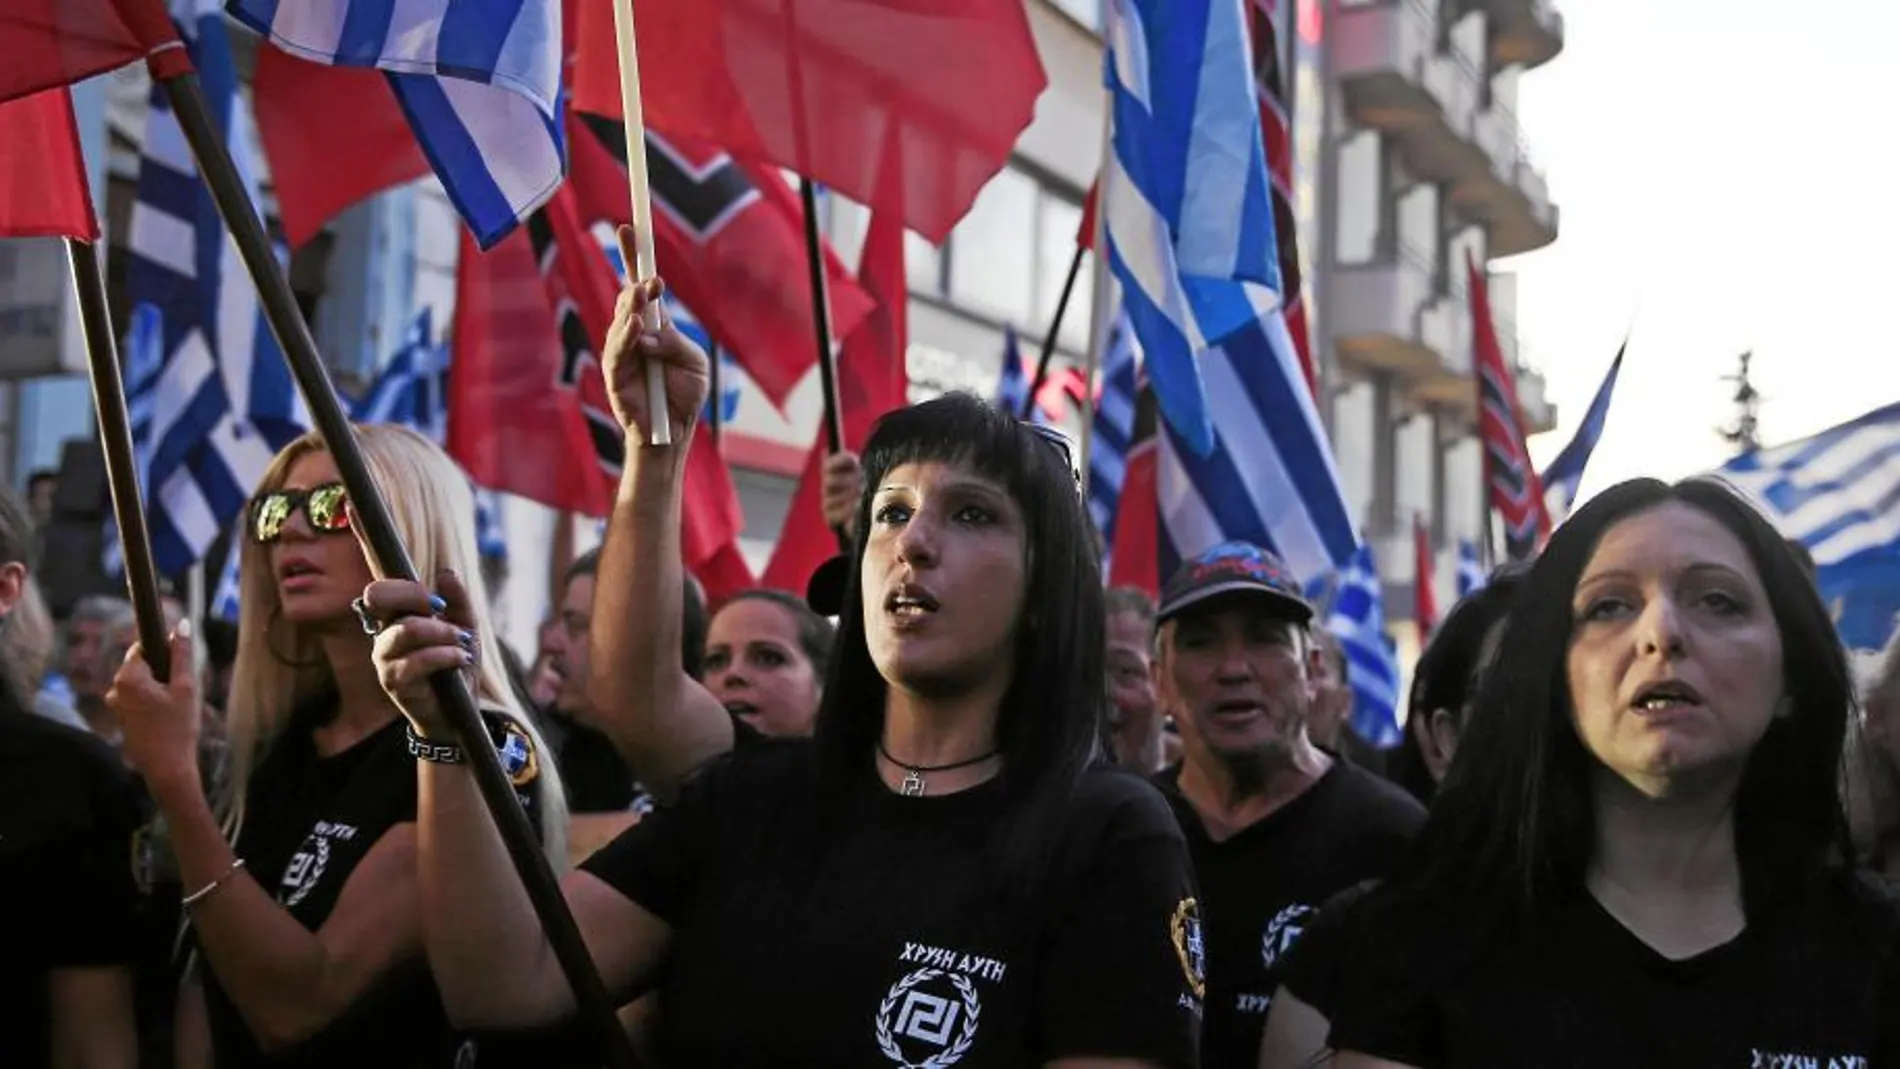 Seguidores de Amanecer Dorado en una manifestación ayer en Atenas